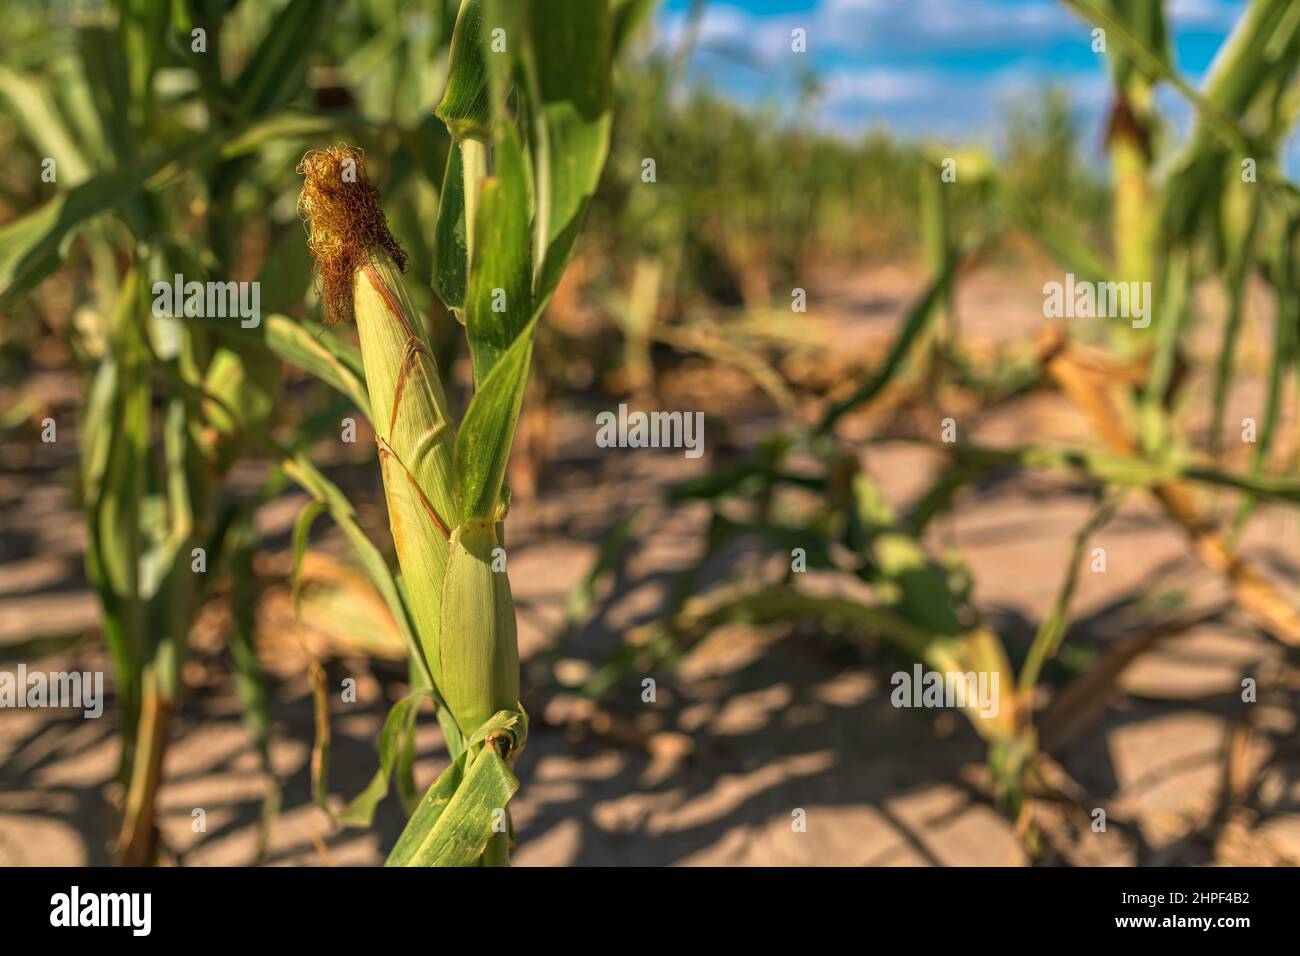 Cultivos de maíz no desarrollados afectados por la falta de agua y la sequía, enfoque selectivo Foto de stock